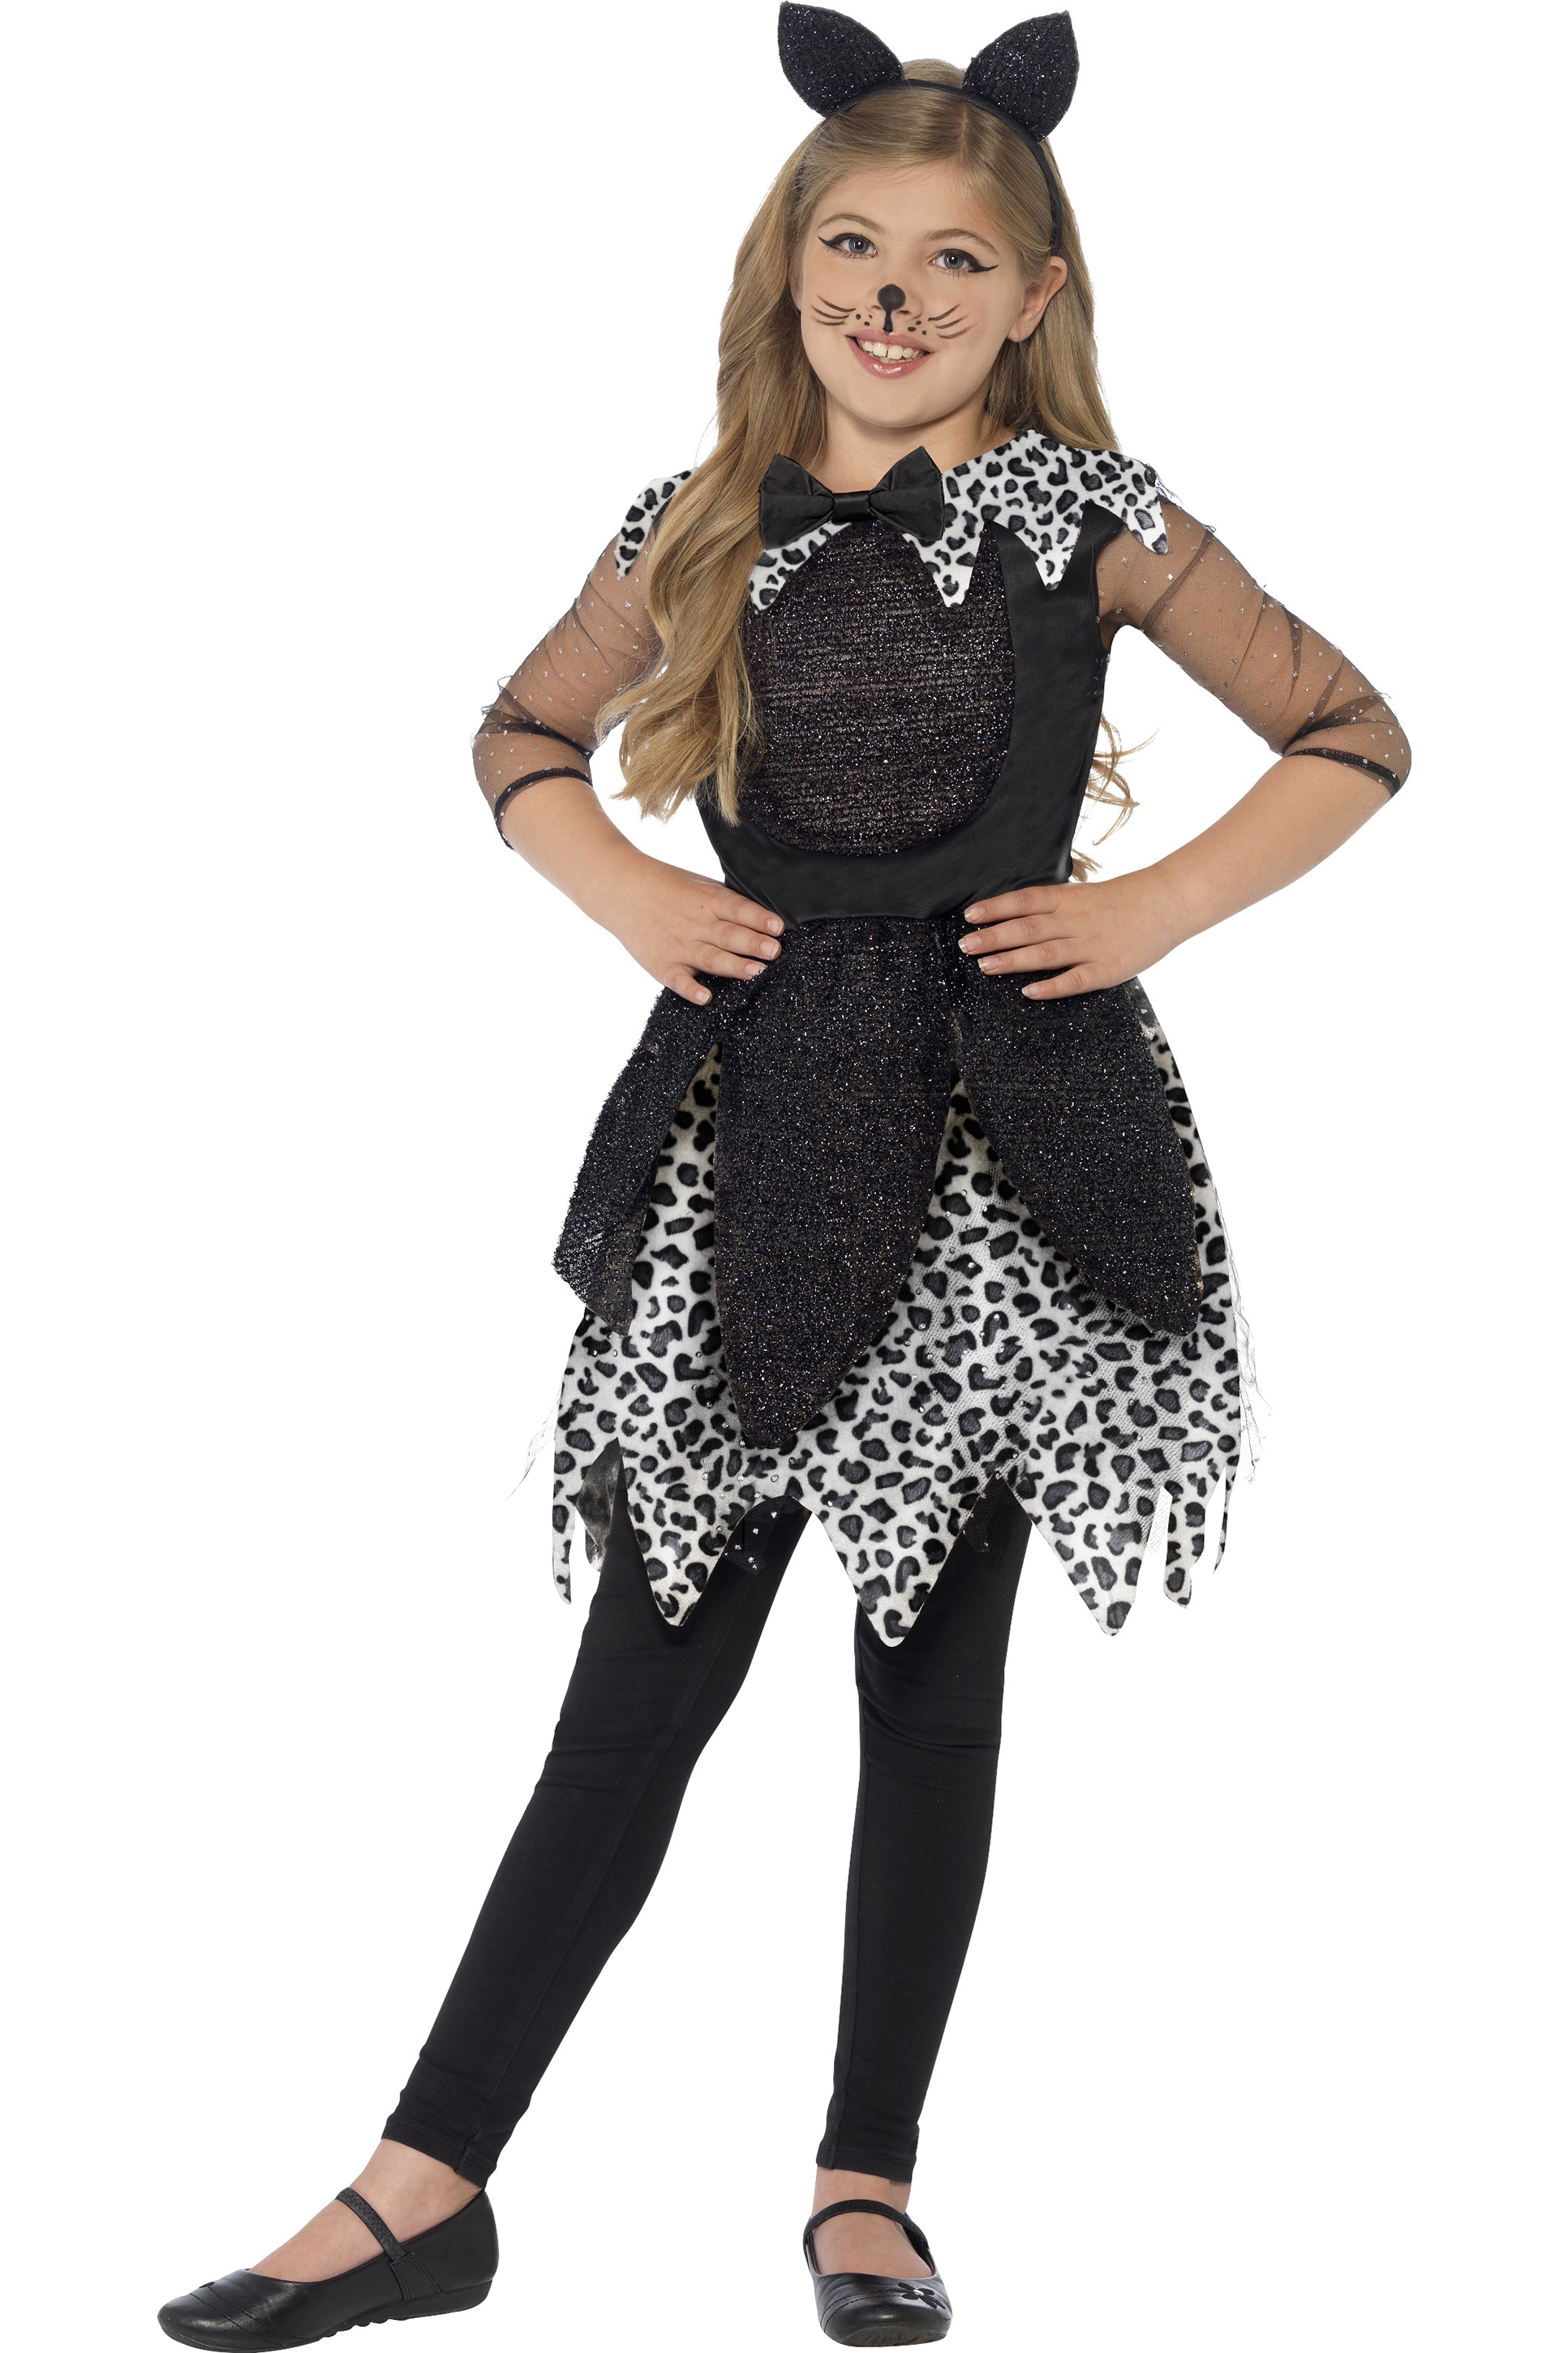 Verbazingwekkend Kat Kostuum Kids Deluxe kostuum voor een leuke Halloween! LY-99